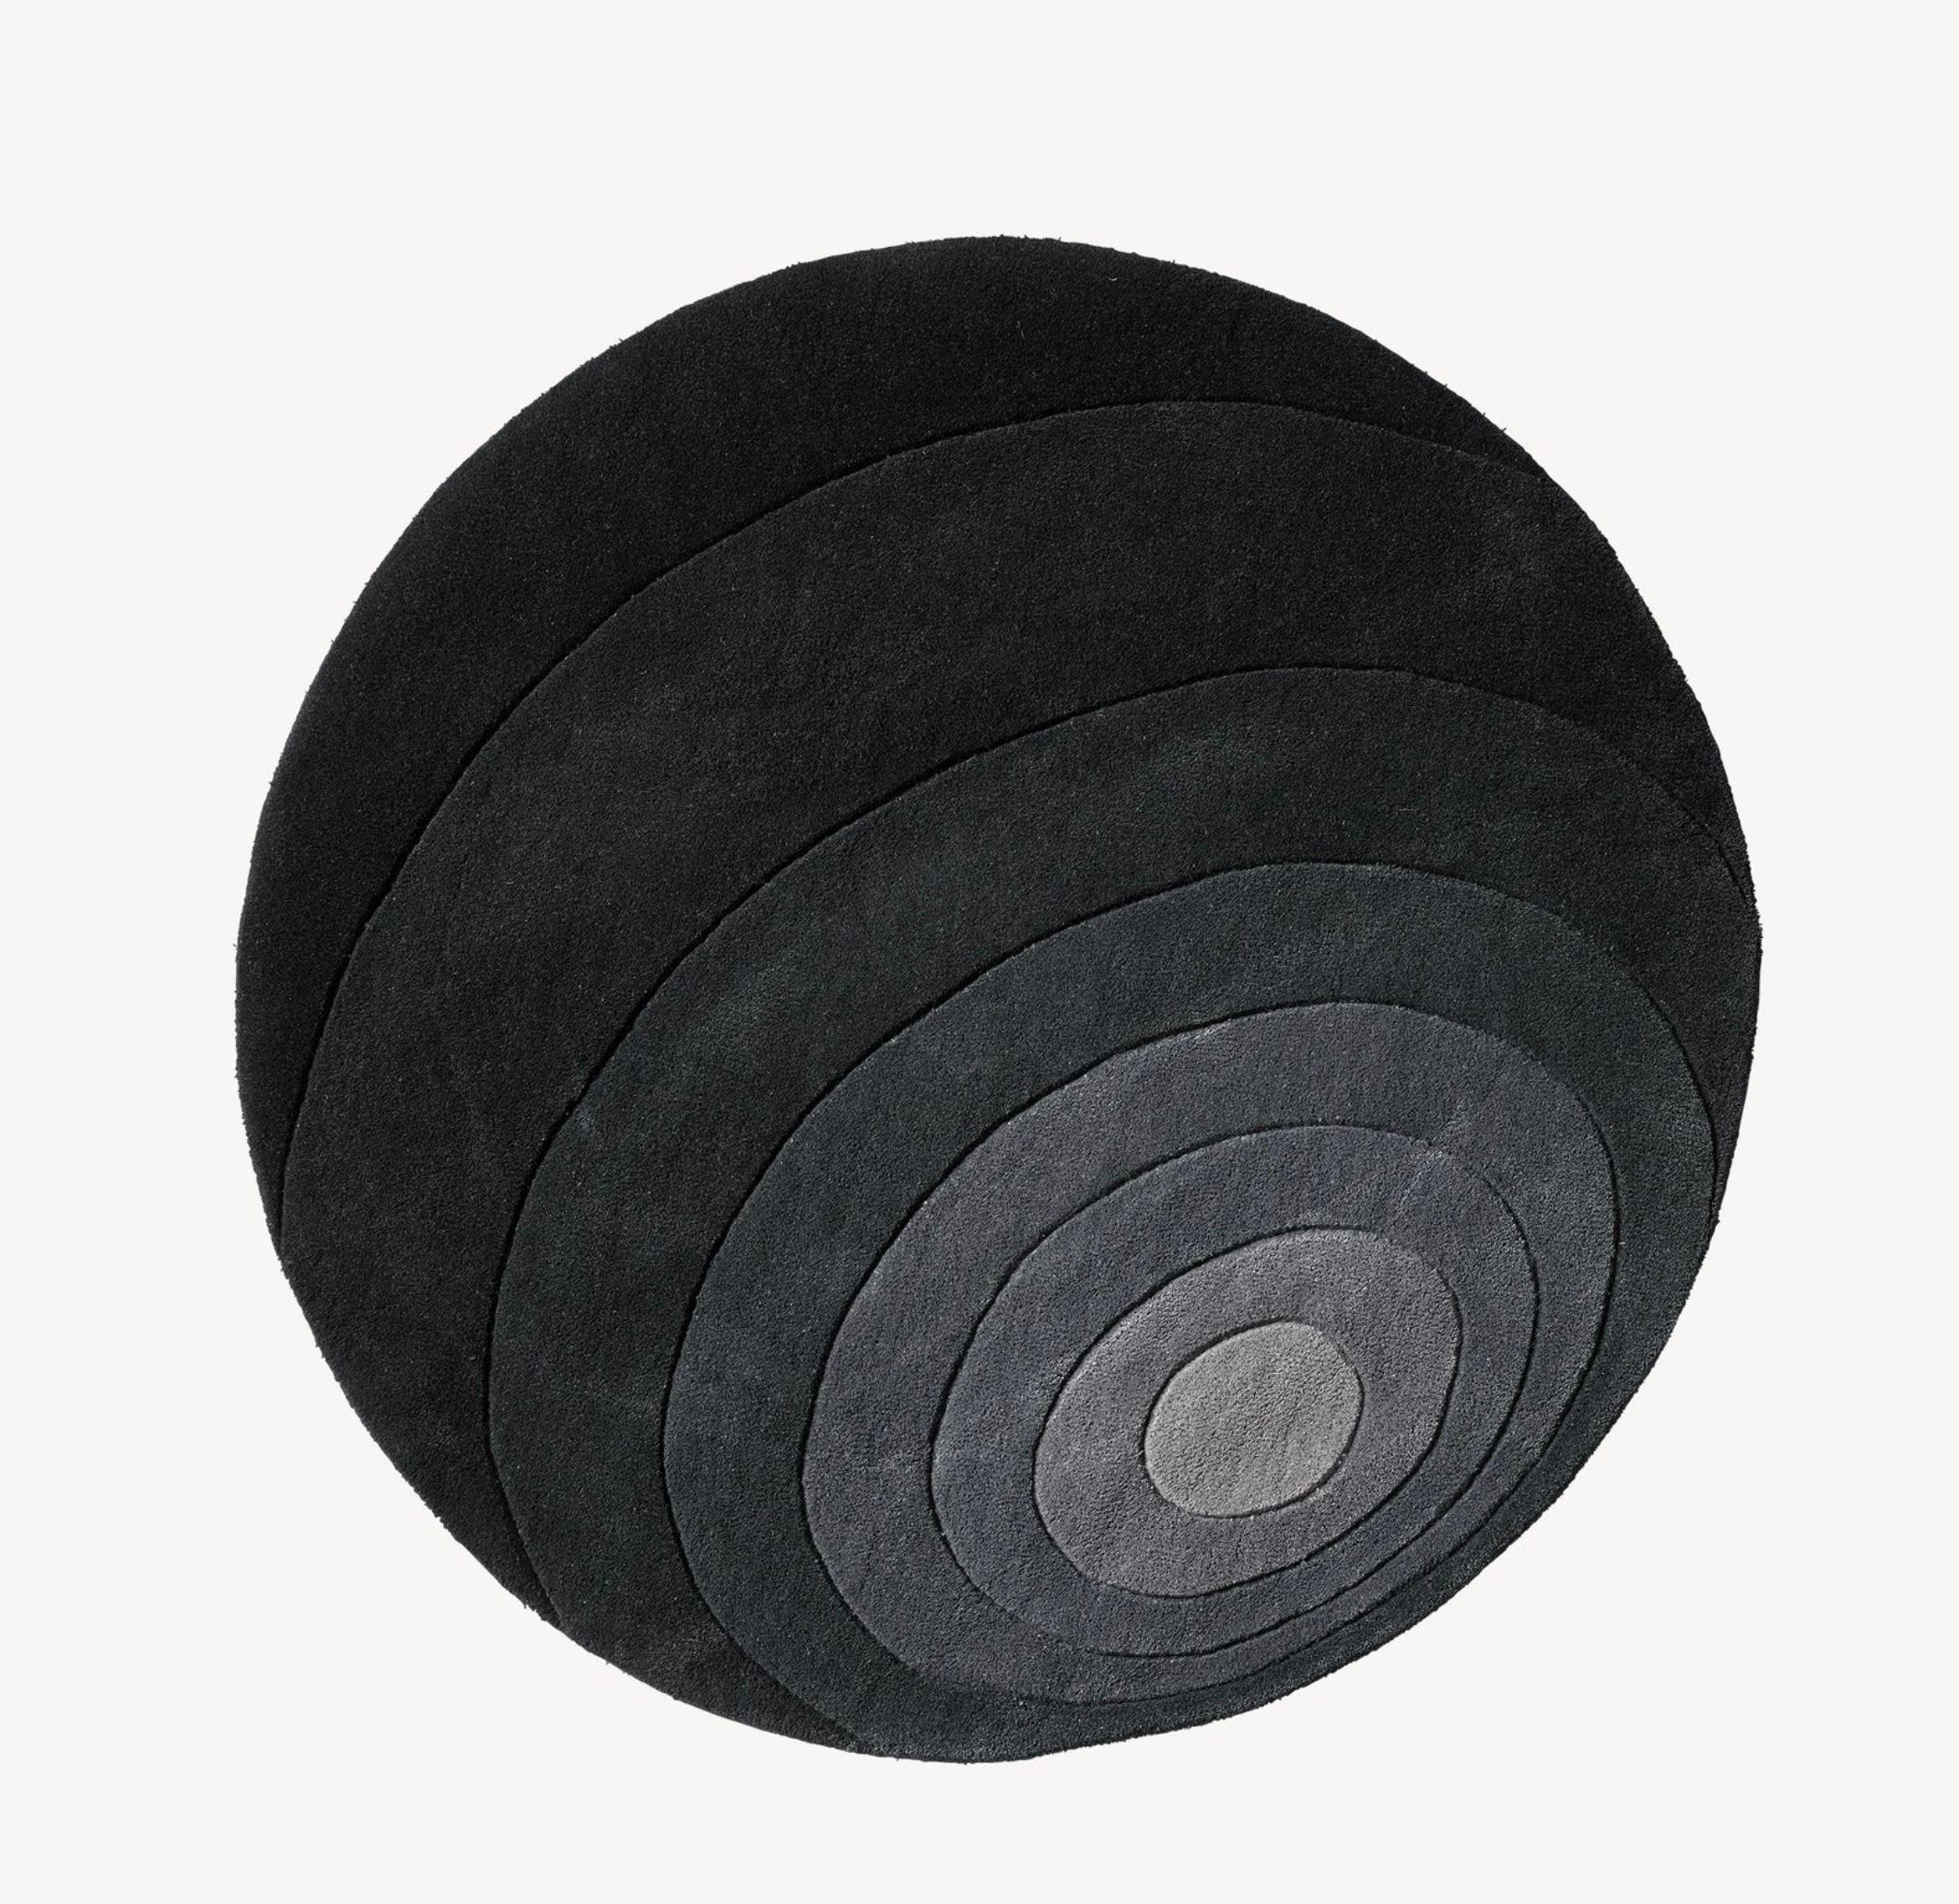 Verner Panton 'Luna' Teppich 120cm von Verpan. Aktuelle Produktion.

Teppiche verleihen einem Raum nicht nur eine skulpturale Note, sondern dienen auch dazu, die Dimensionen des Raums zu betonen und/oder zu verändern. Alle Verpan-Teppiche werden aus